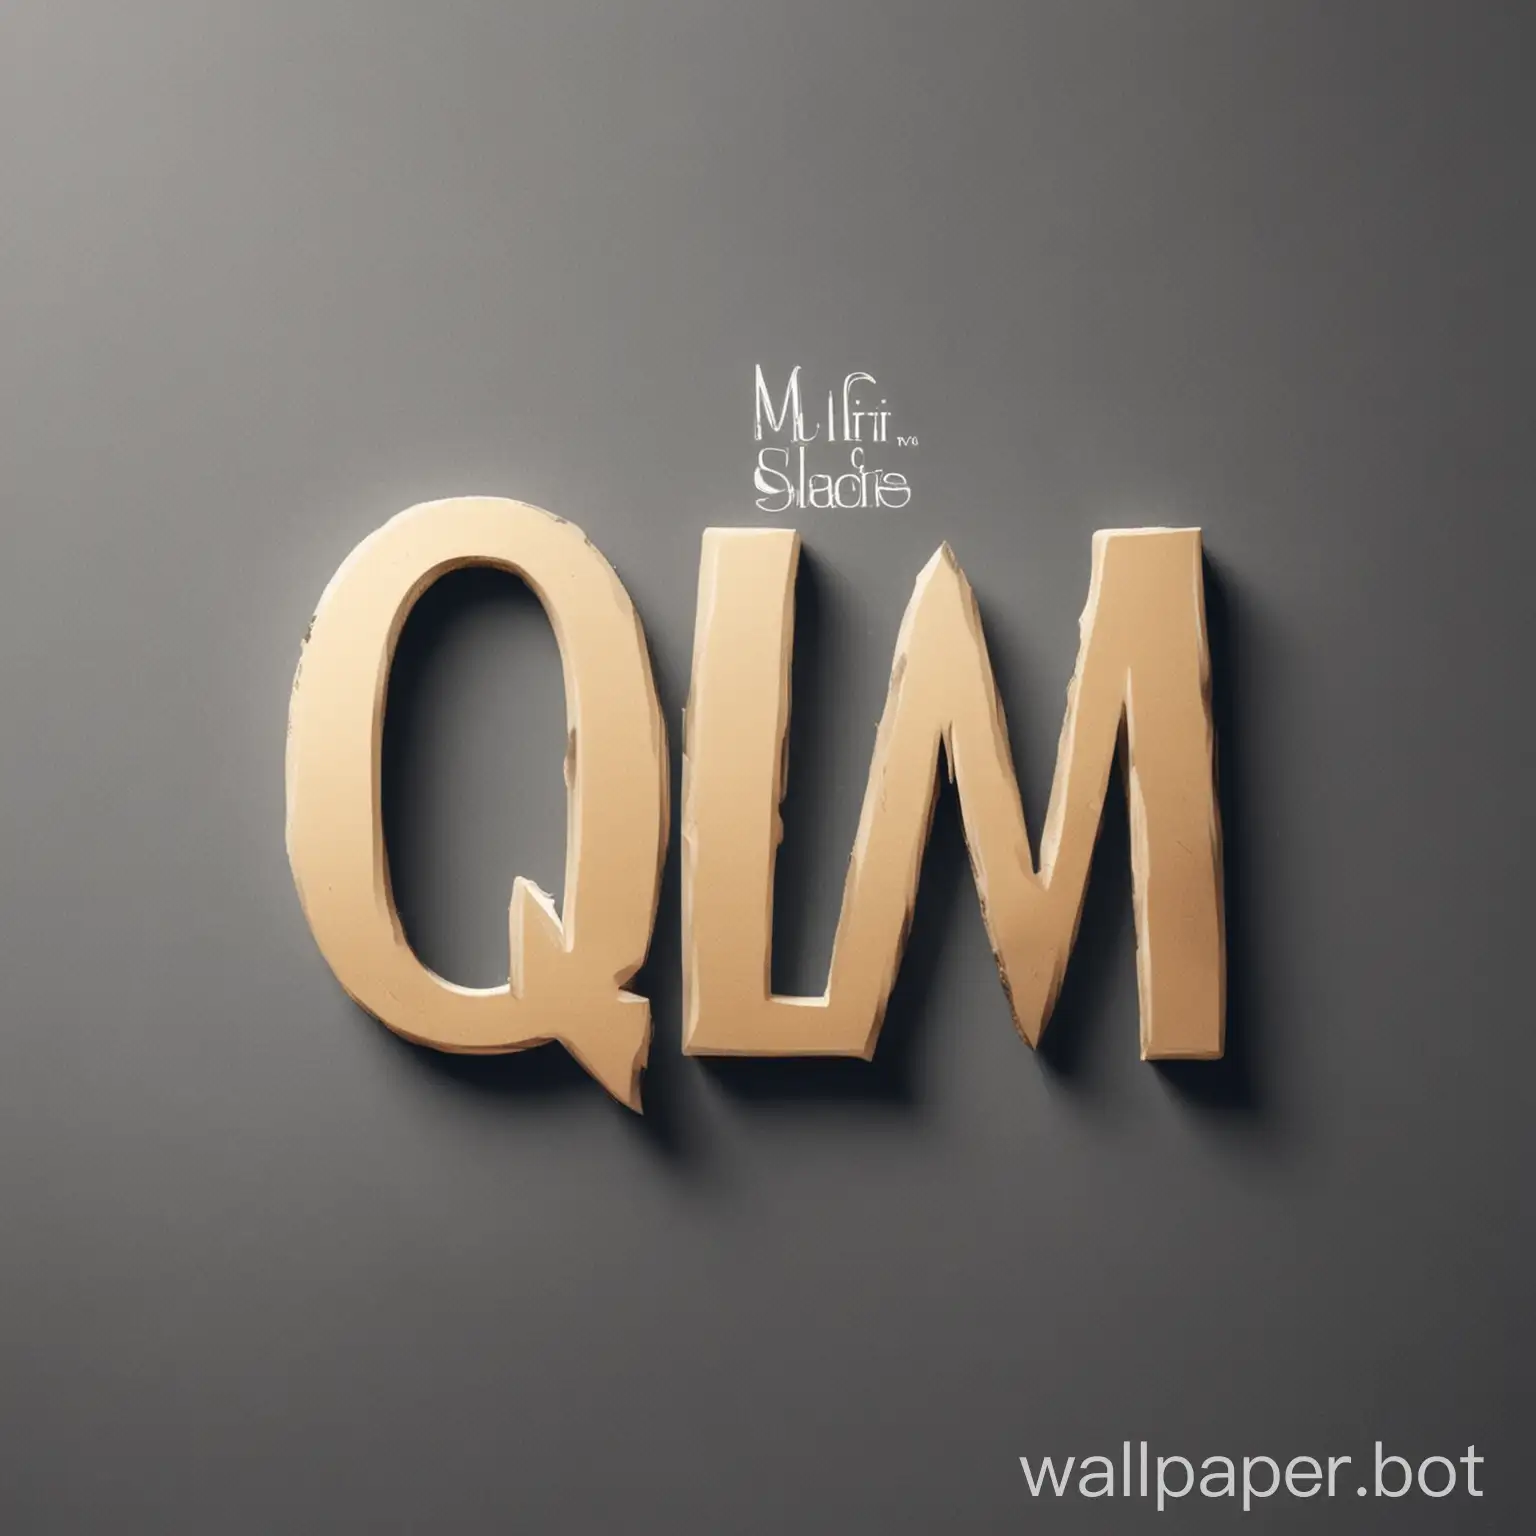 donne moi un logo sous forme les lettre QLM avec la nom de la marque sous le nom (Que La Mif)
